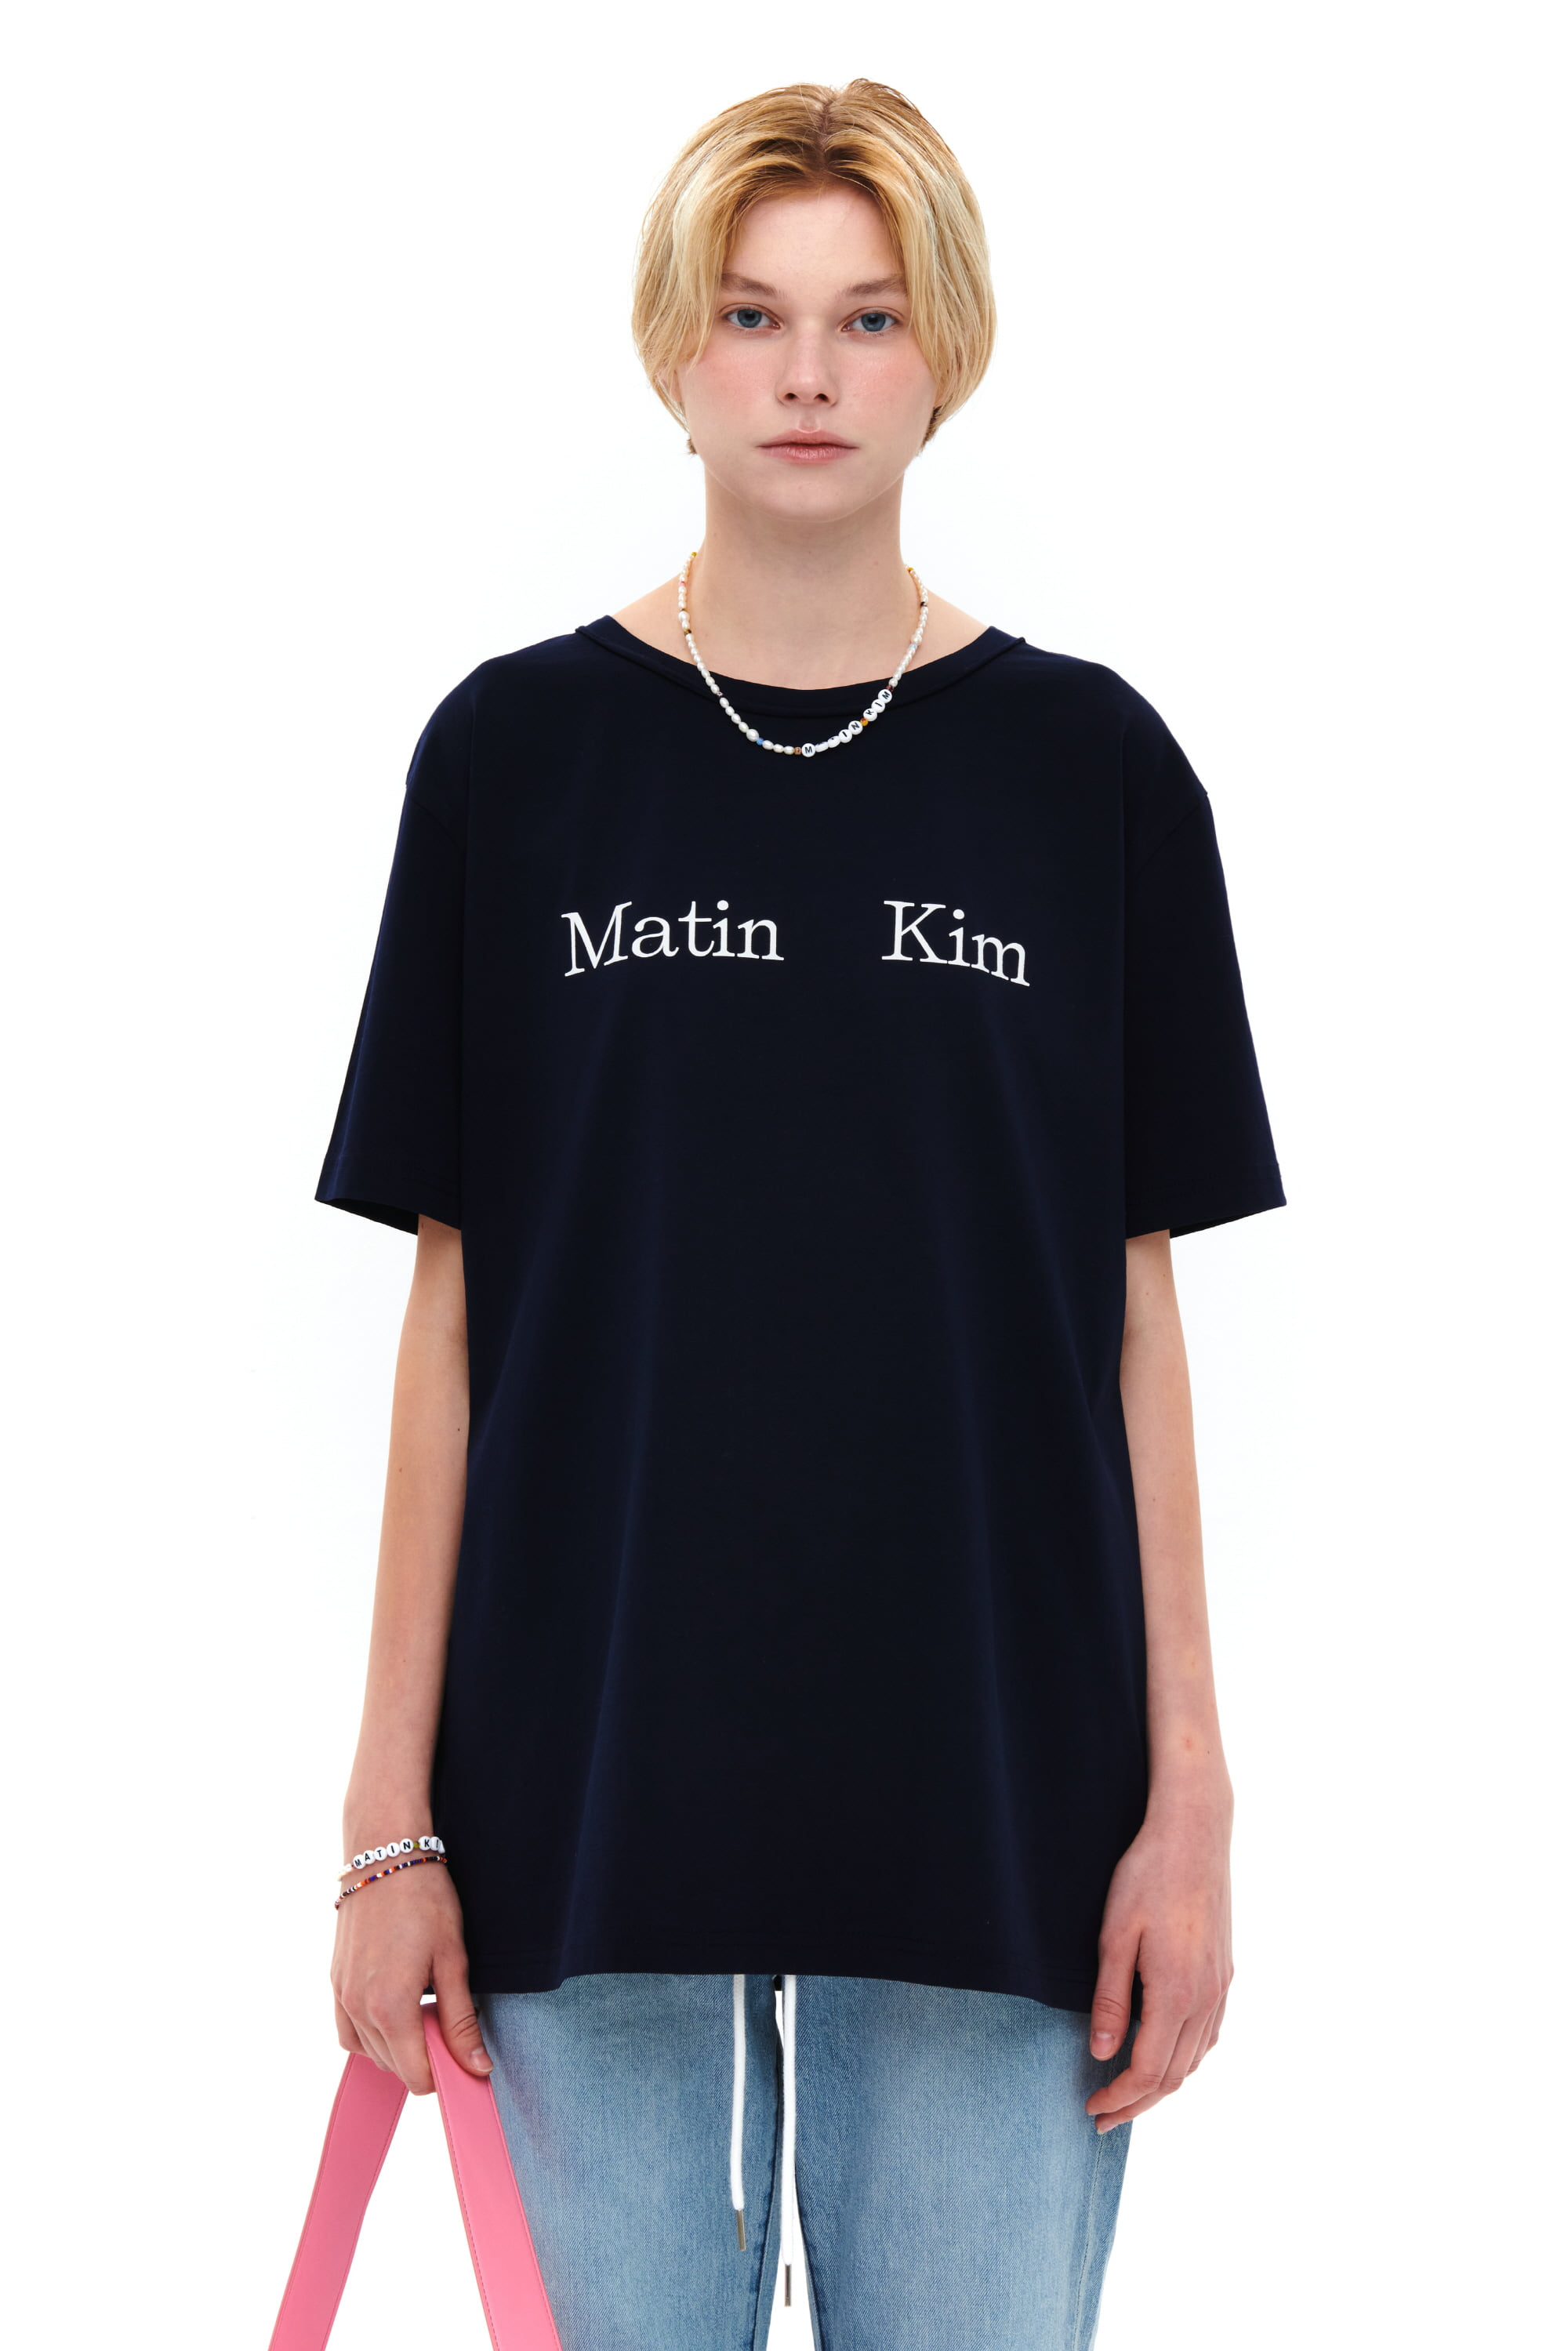 MATIN KIM LOGO T-SHIRT IN NAVY